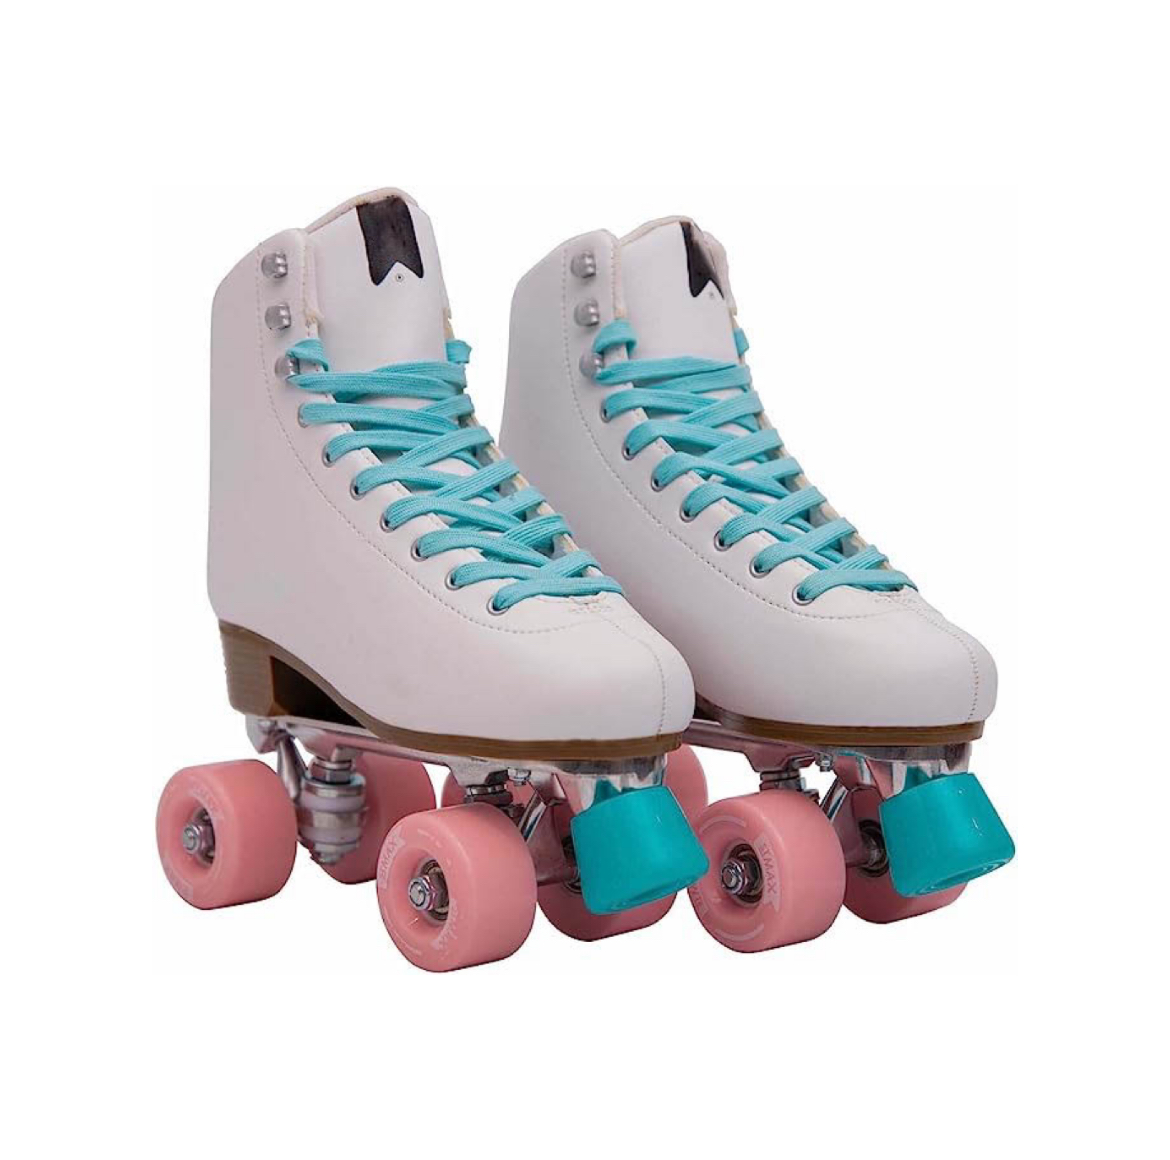 स्केट महिला र केटीहरू क्लासिक डर्बी 4 व्हील स्केट्स